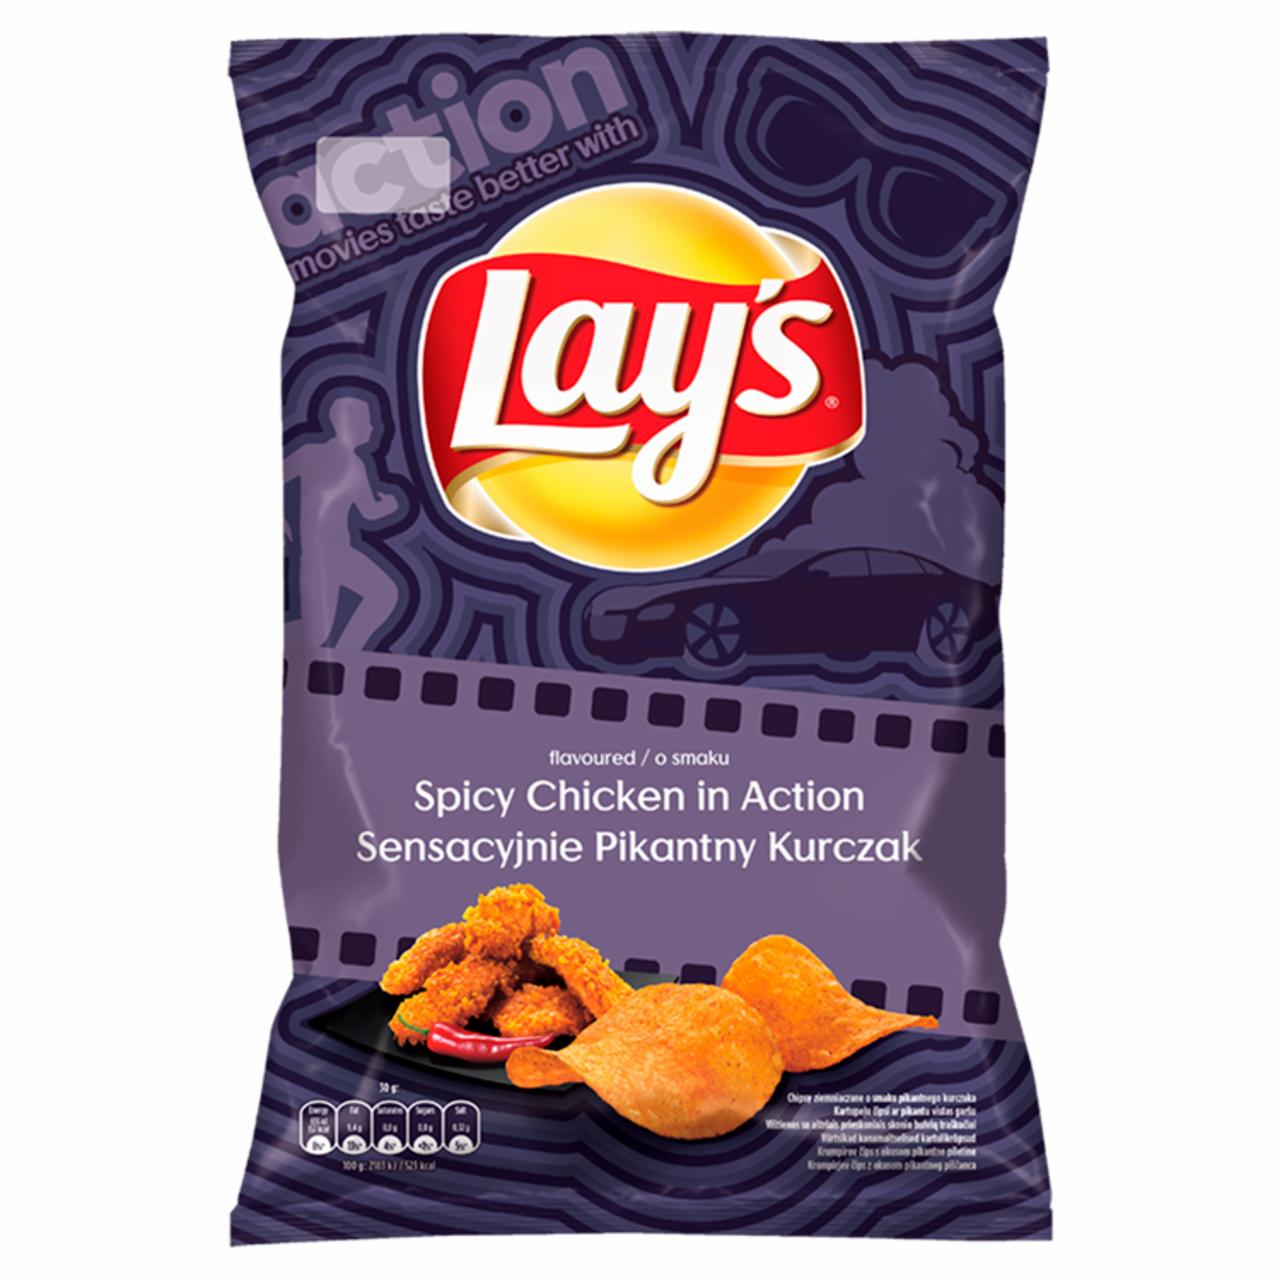 Zdjęcia - Lay's Chipsy ziemniaczane o smaku sensacyjnie pikantny kurczak 140 g